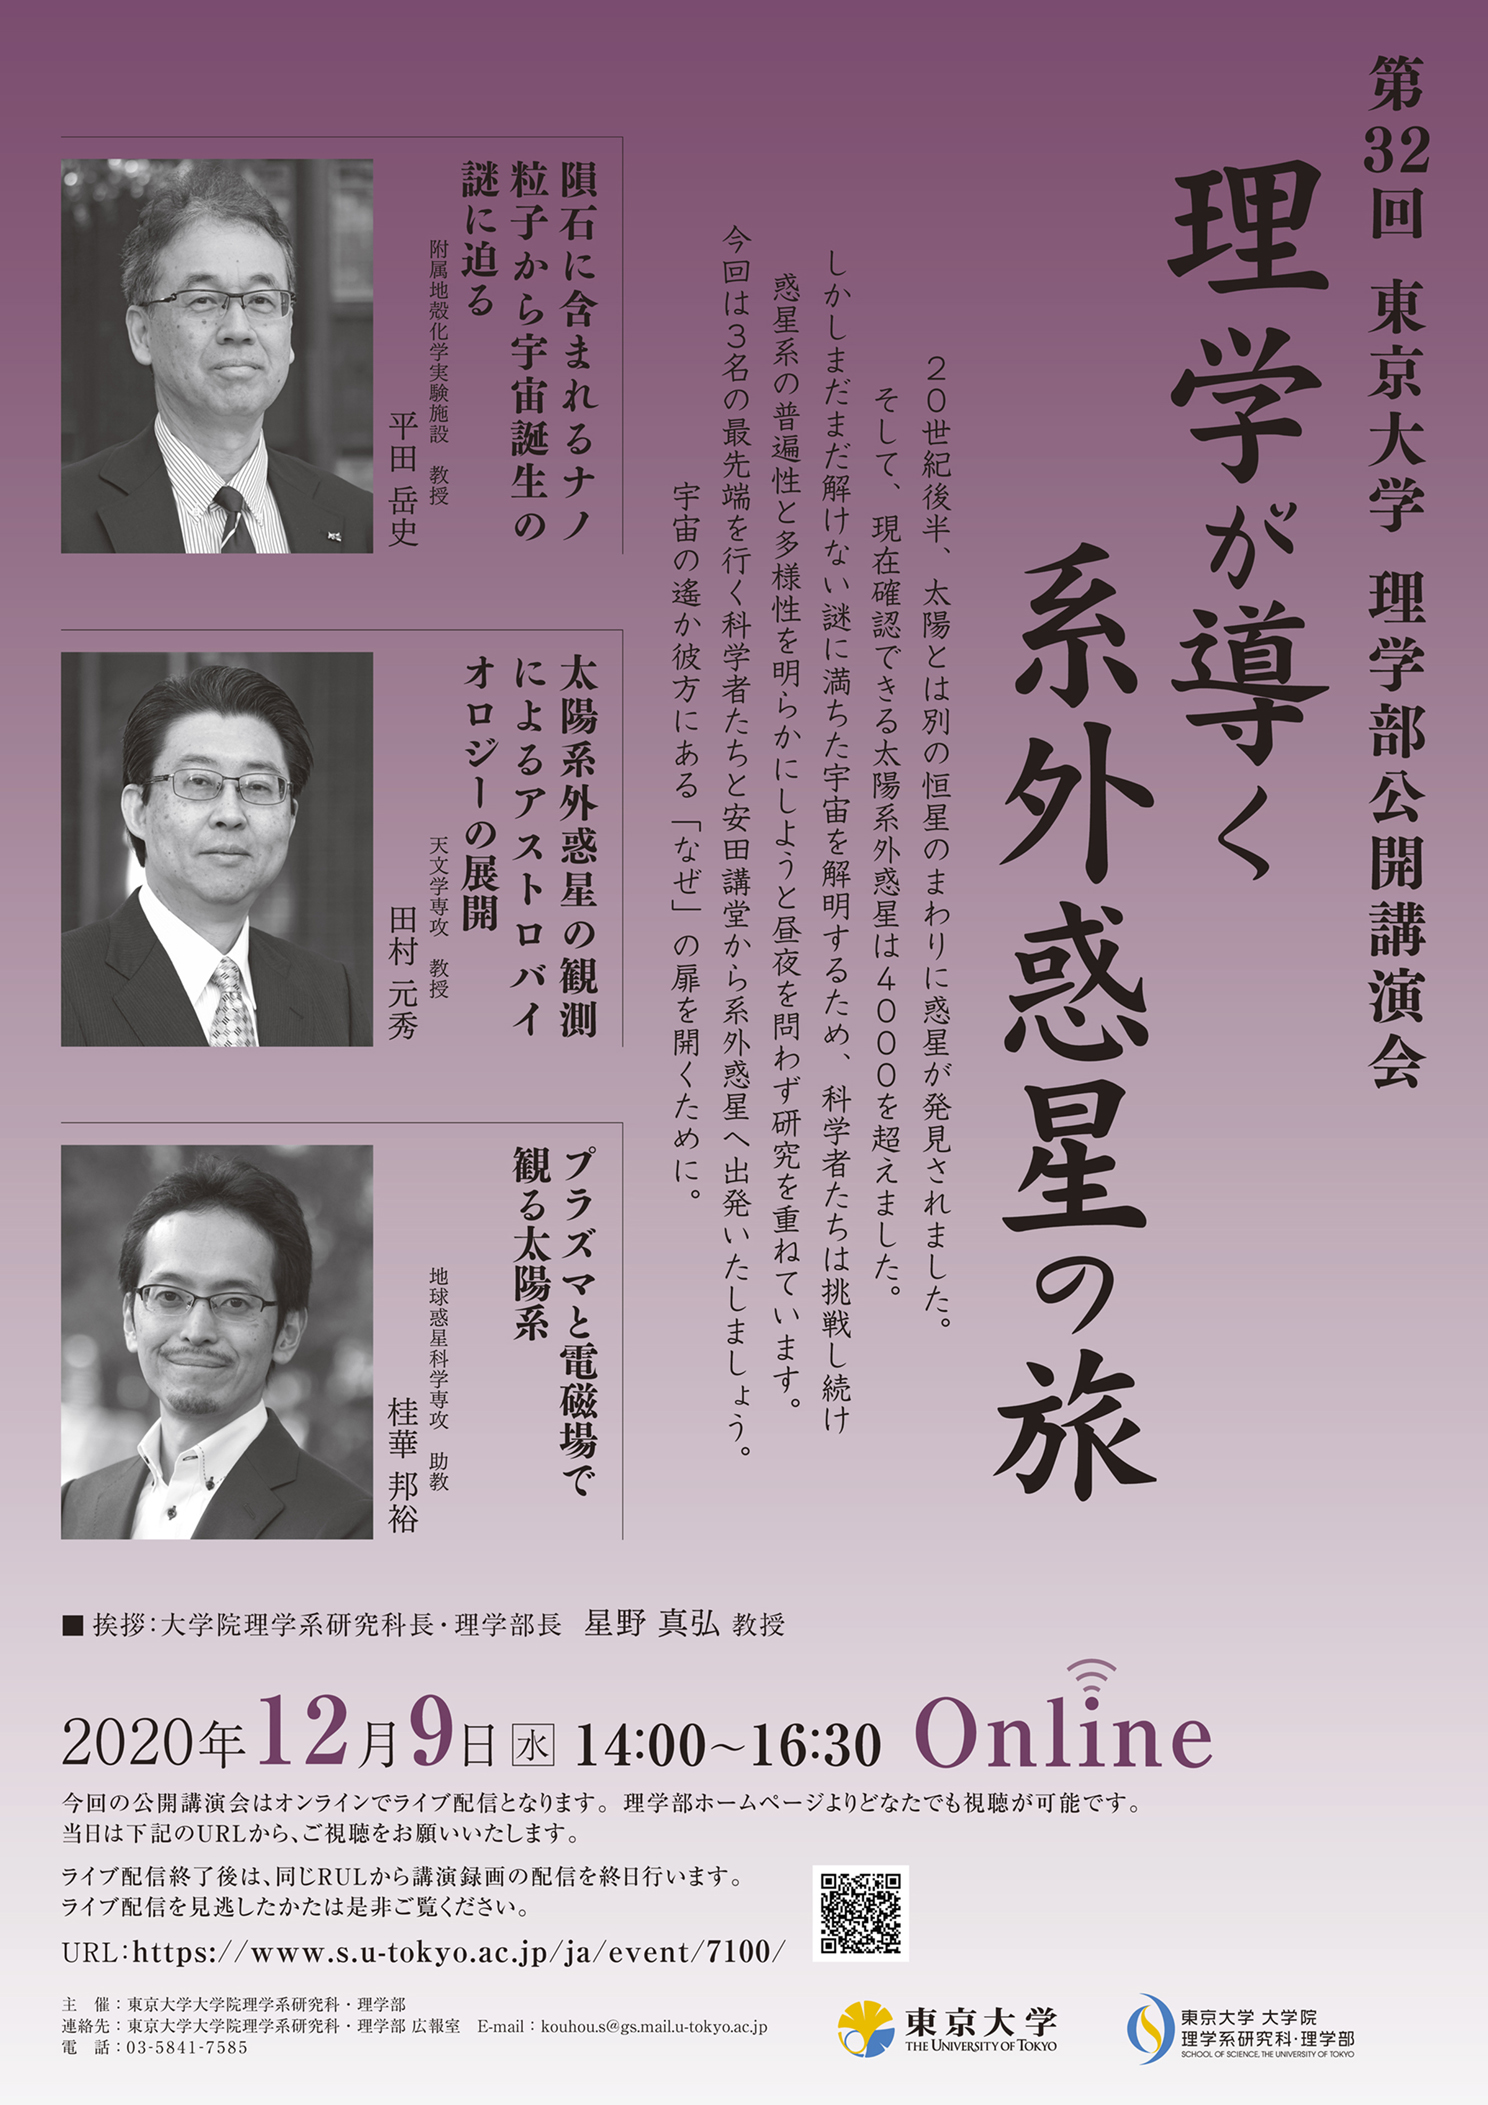 第32回 東京大学 理学部公開講演会 Online